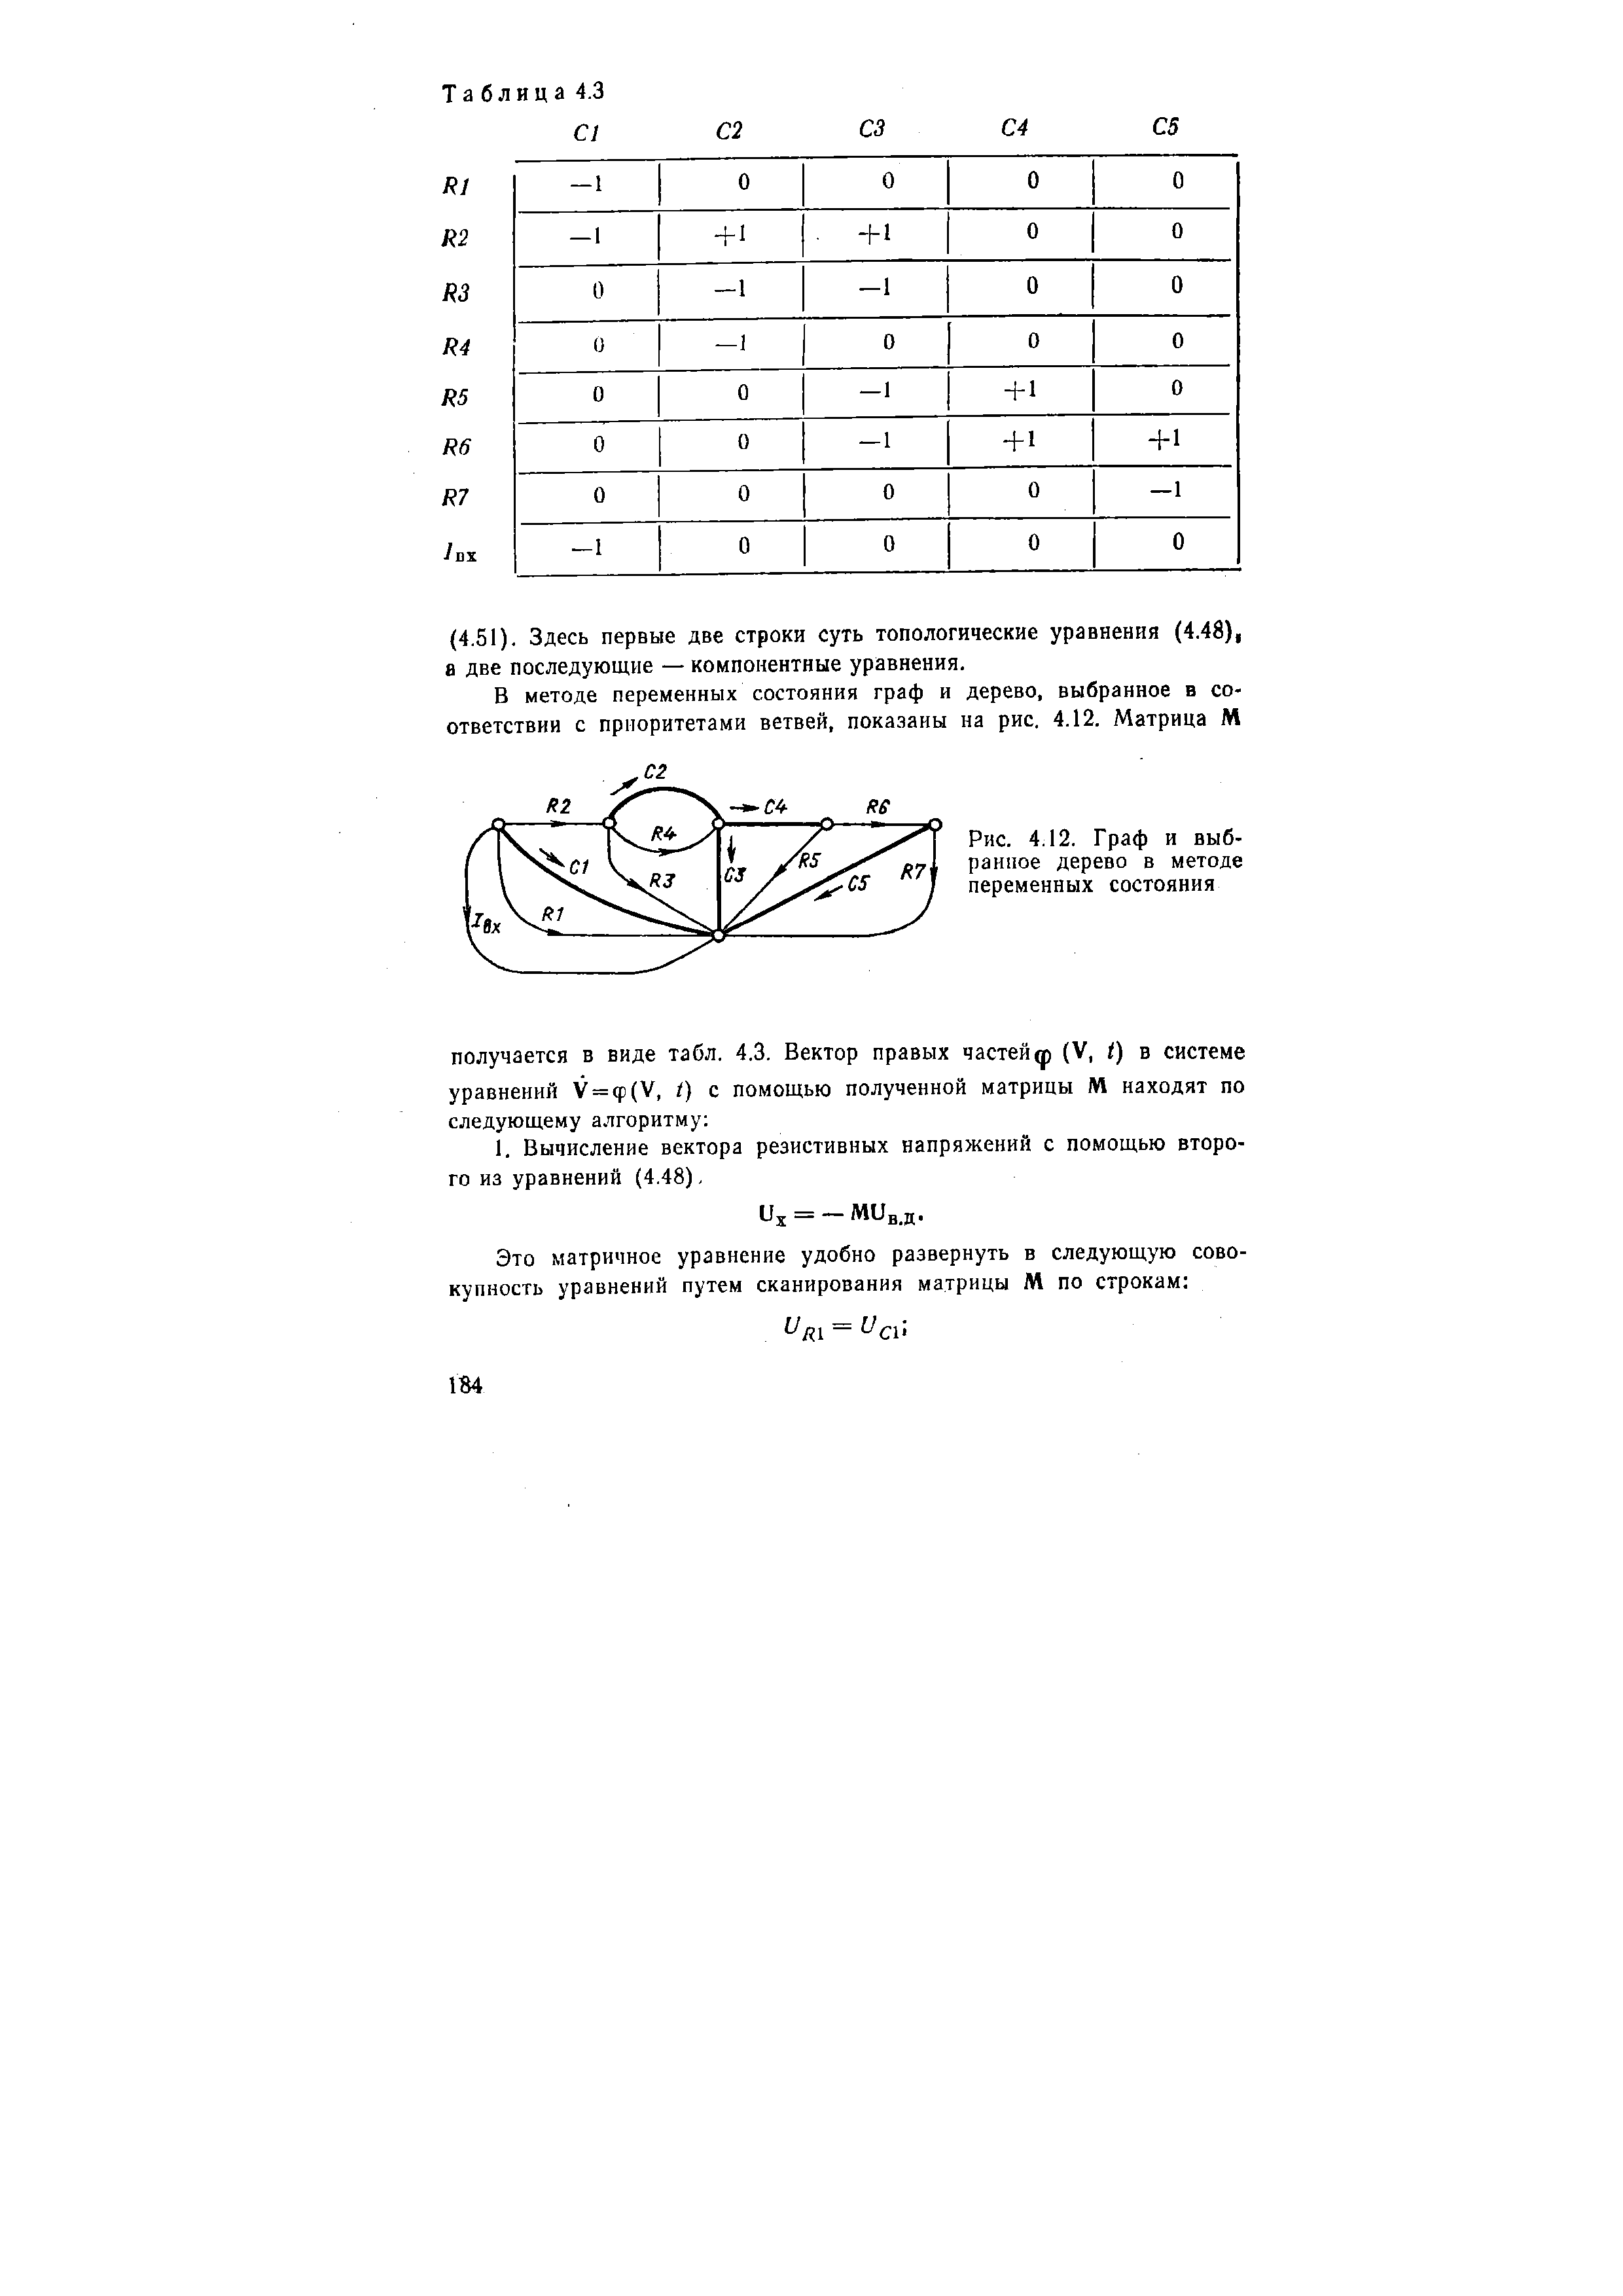 Рис. 4.12. Граф и выбранное дерево в методе переменных состояния
